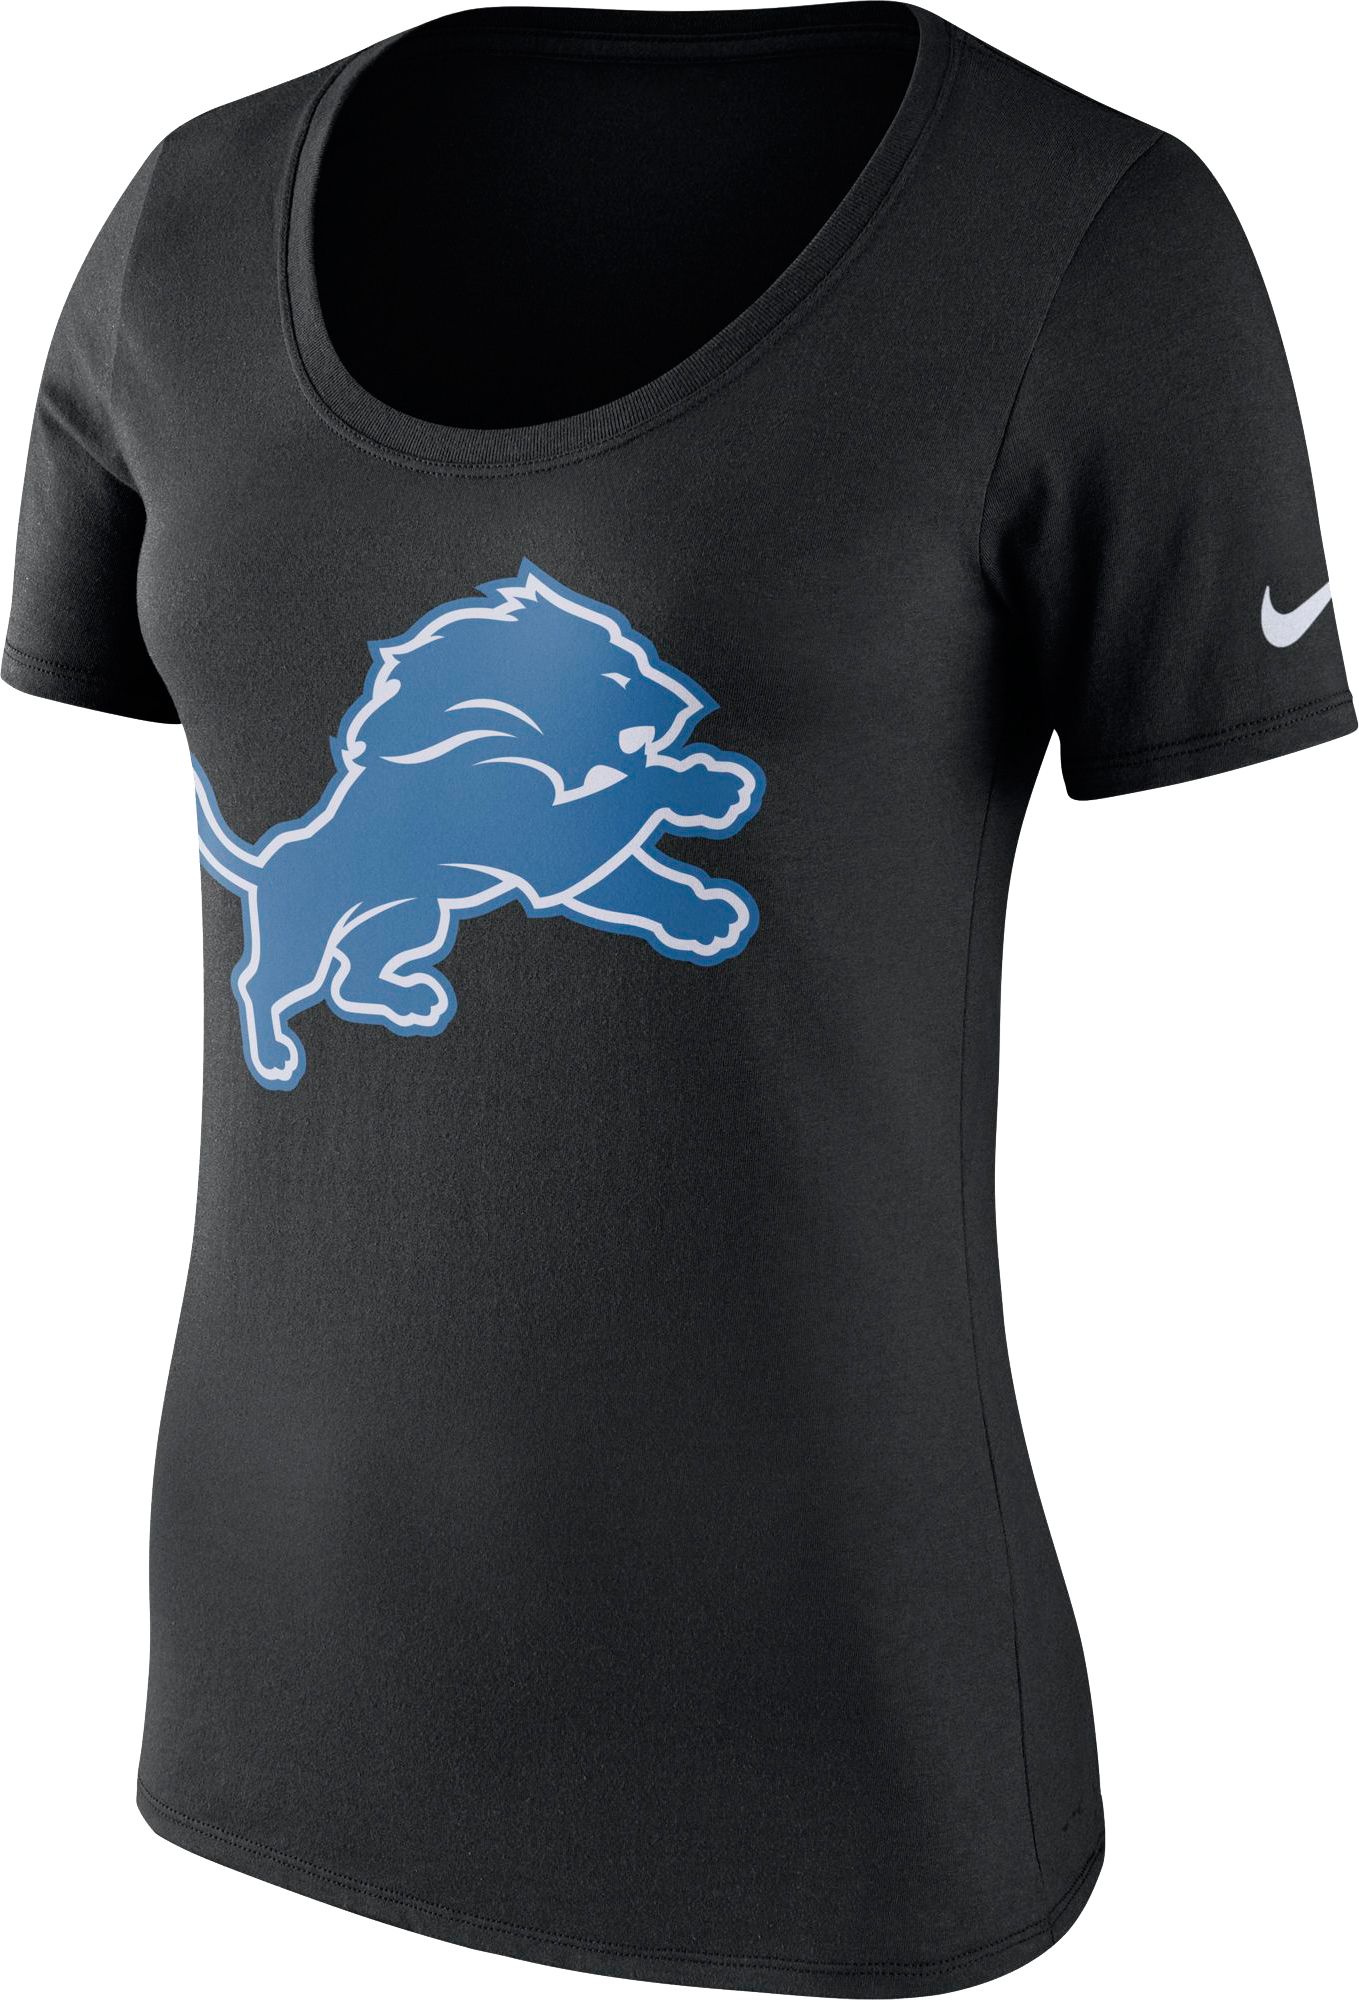 nfl shop lions jersey